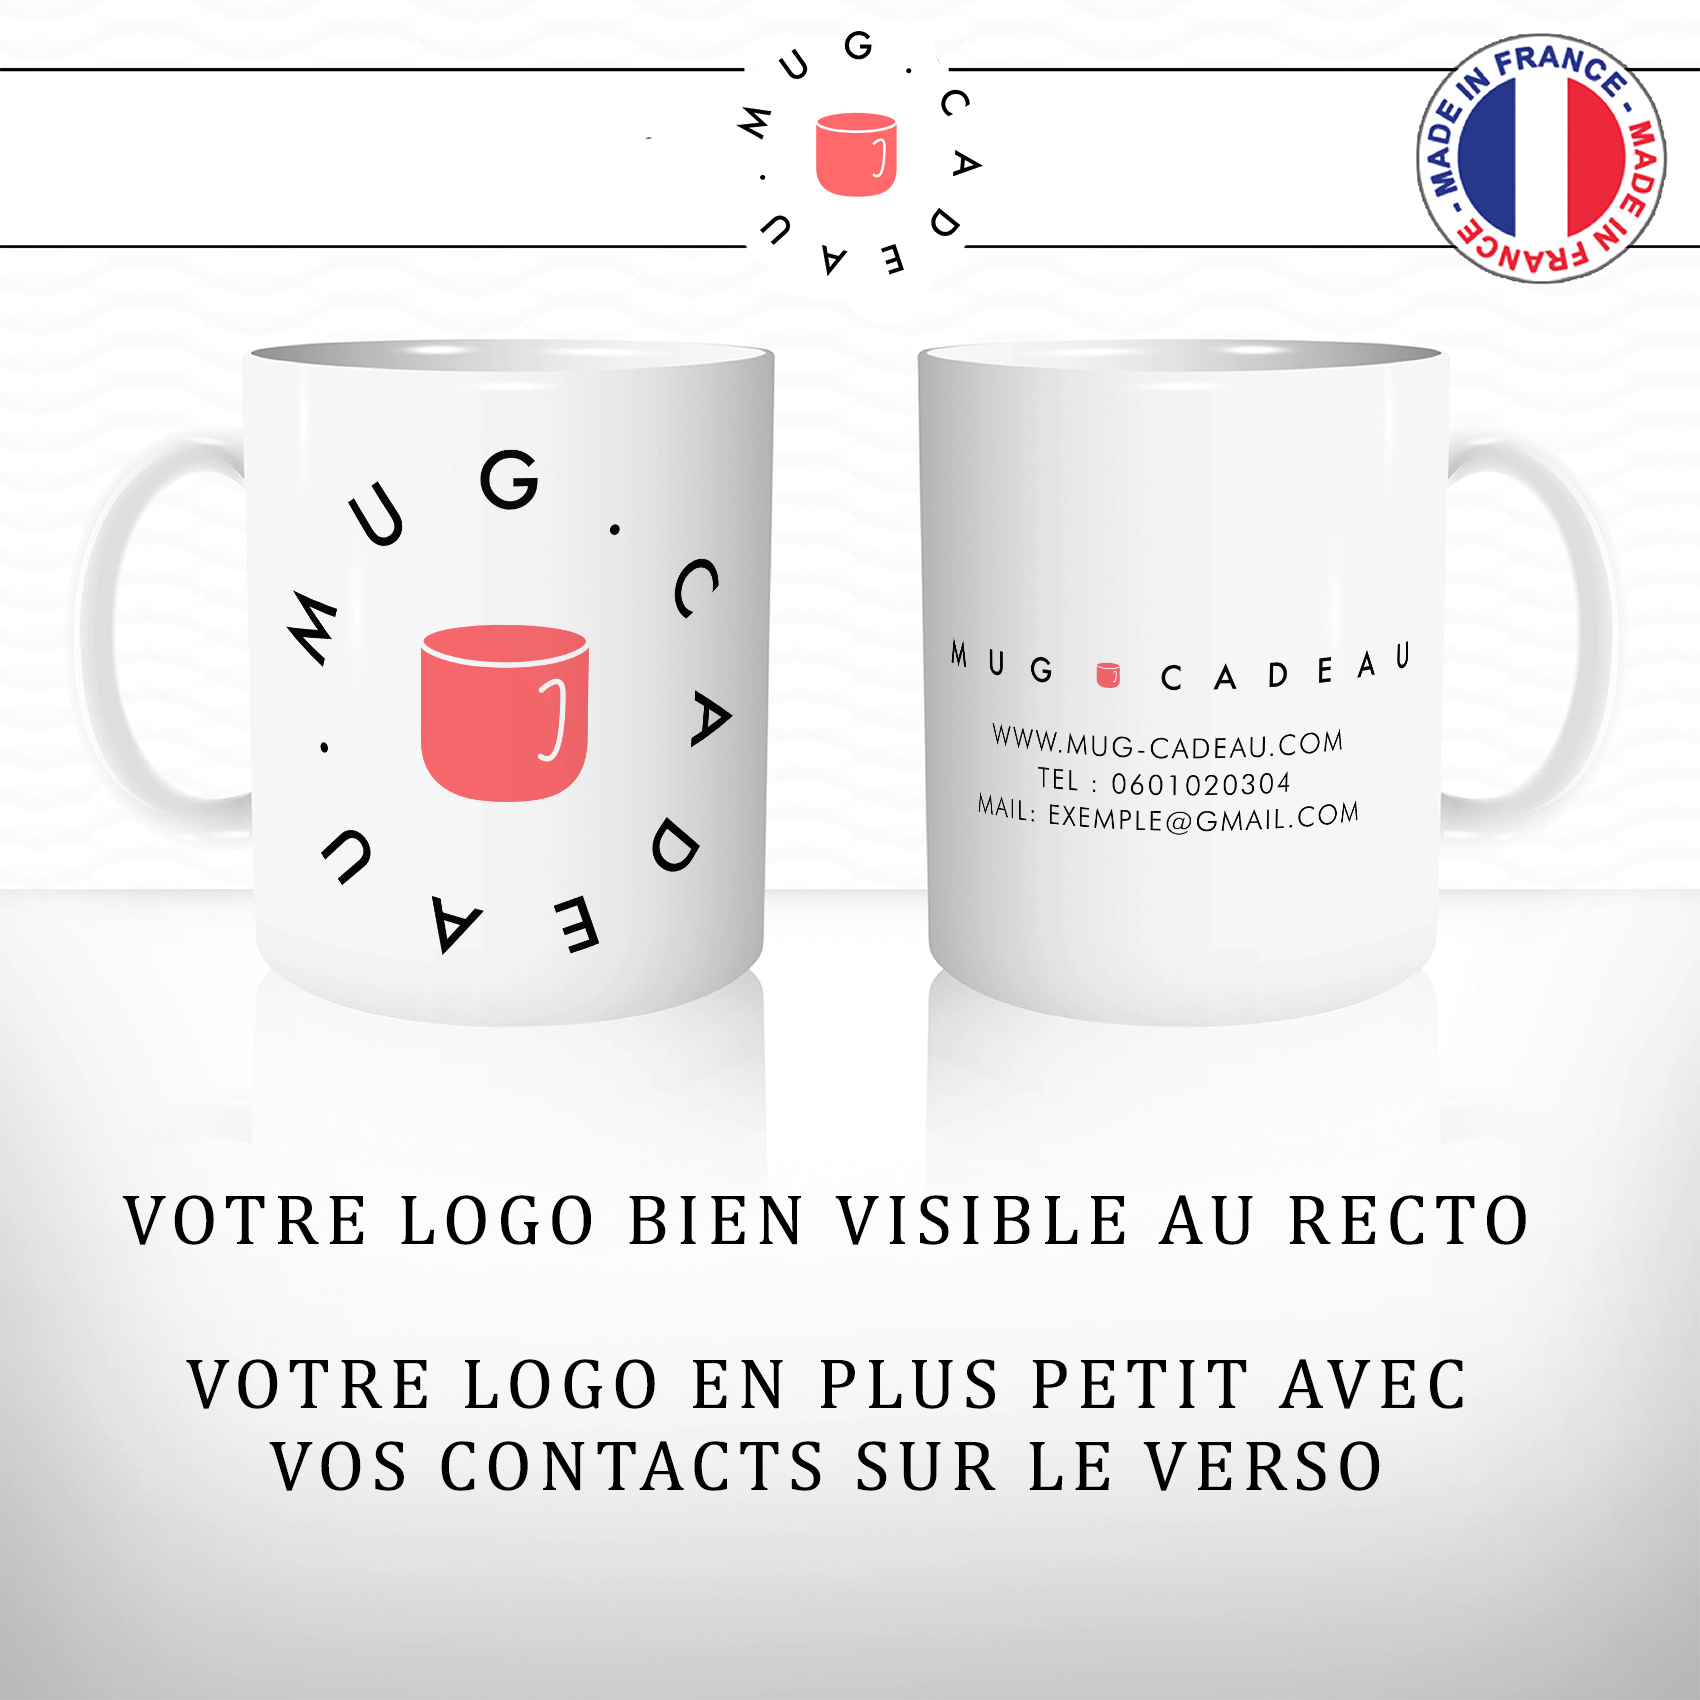 mug-tasse-goodies-logo-entreprise-contact-mail-cadeau-client-séminaire-formation-relation-client-logos-personnalisés-société-vente-grossiste-noel-goodie